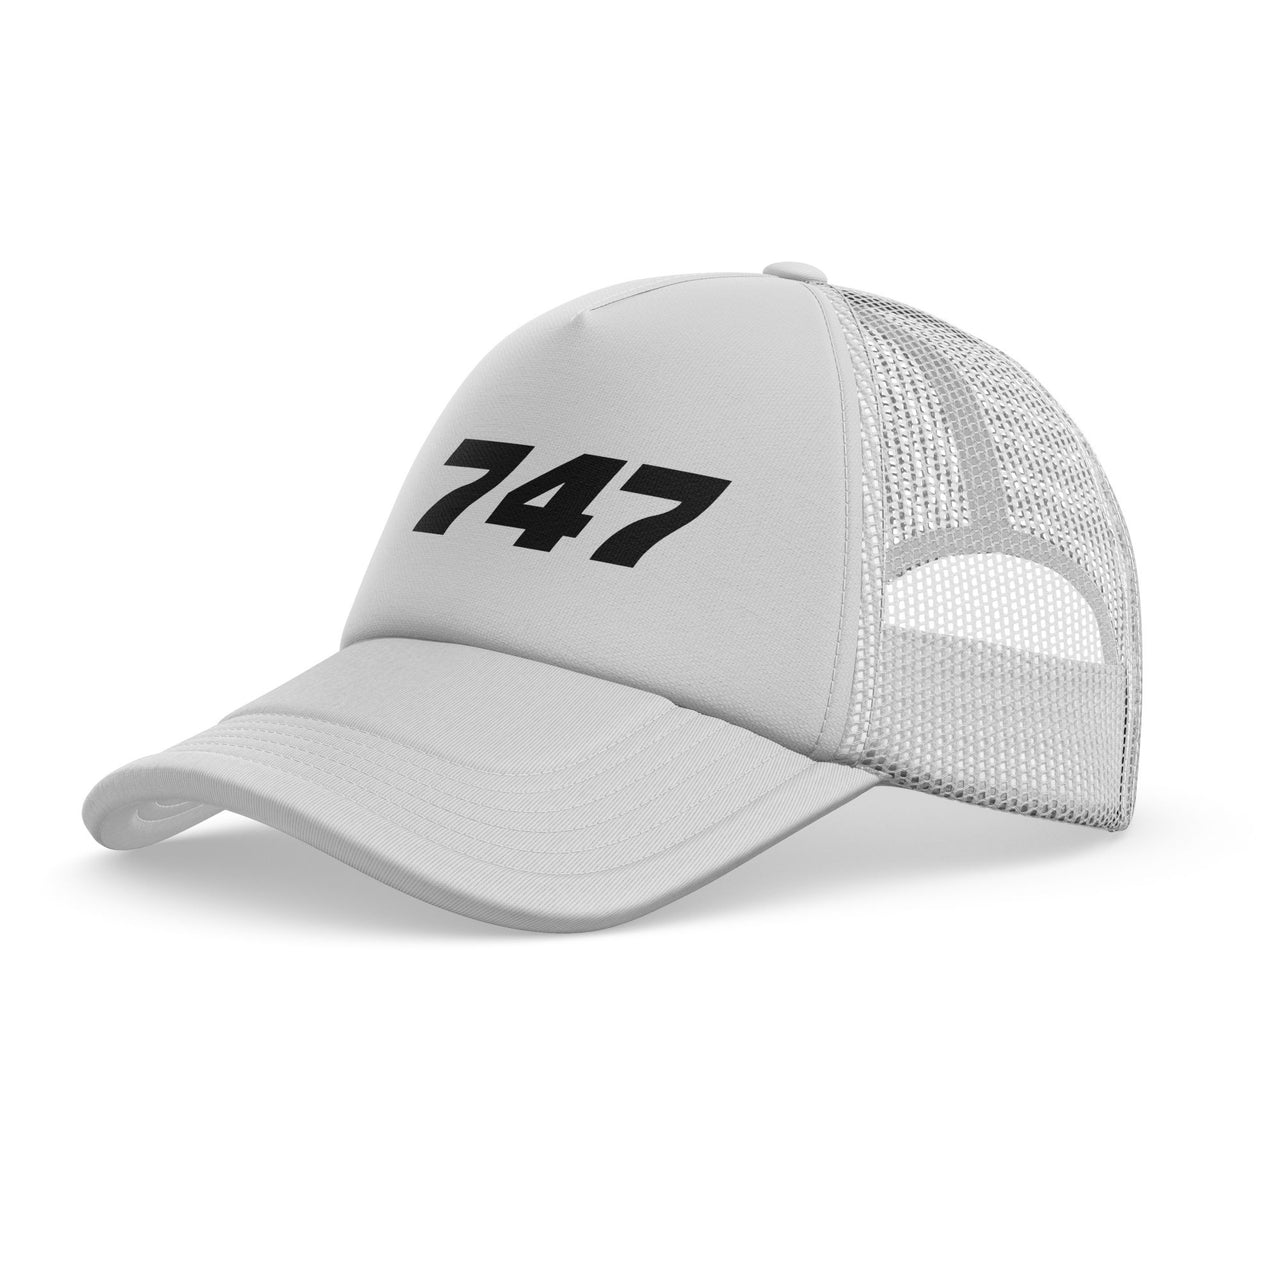 747 Flat Text Designed Trucker Caps & Hats